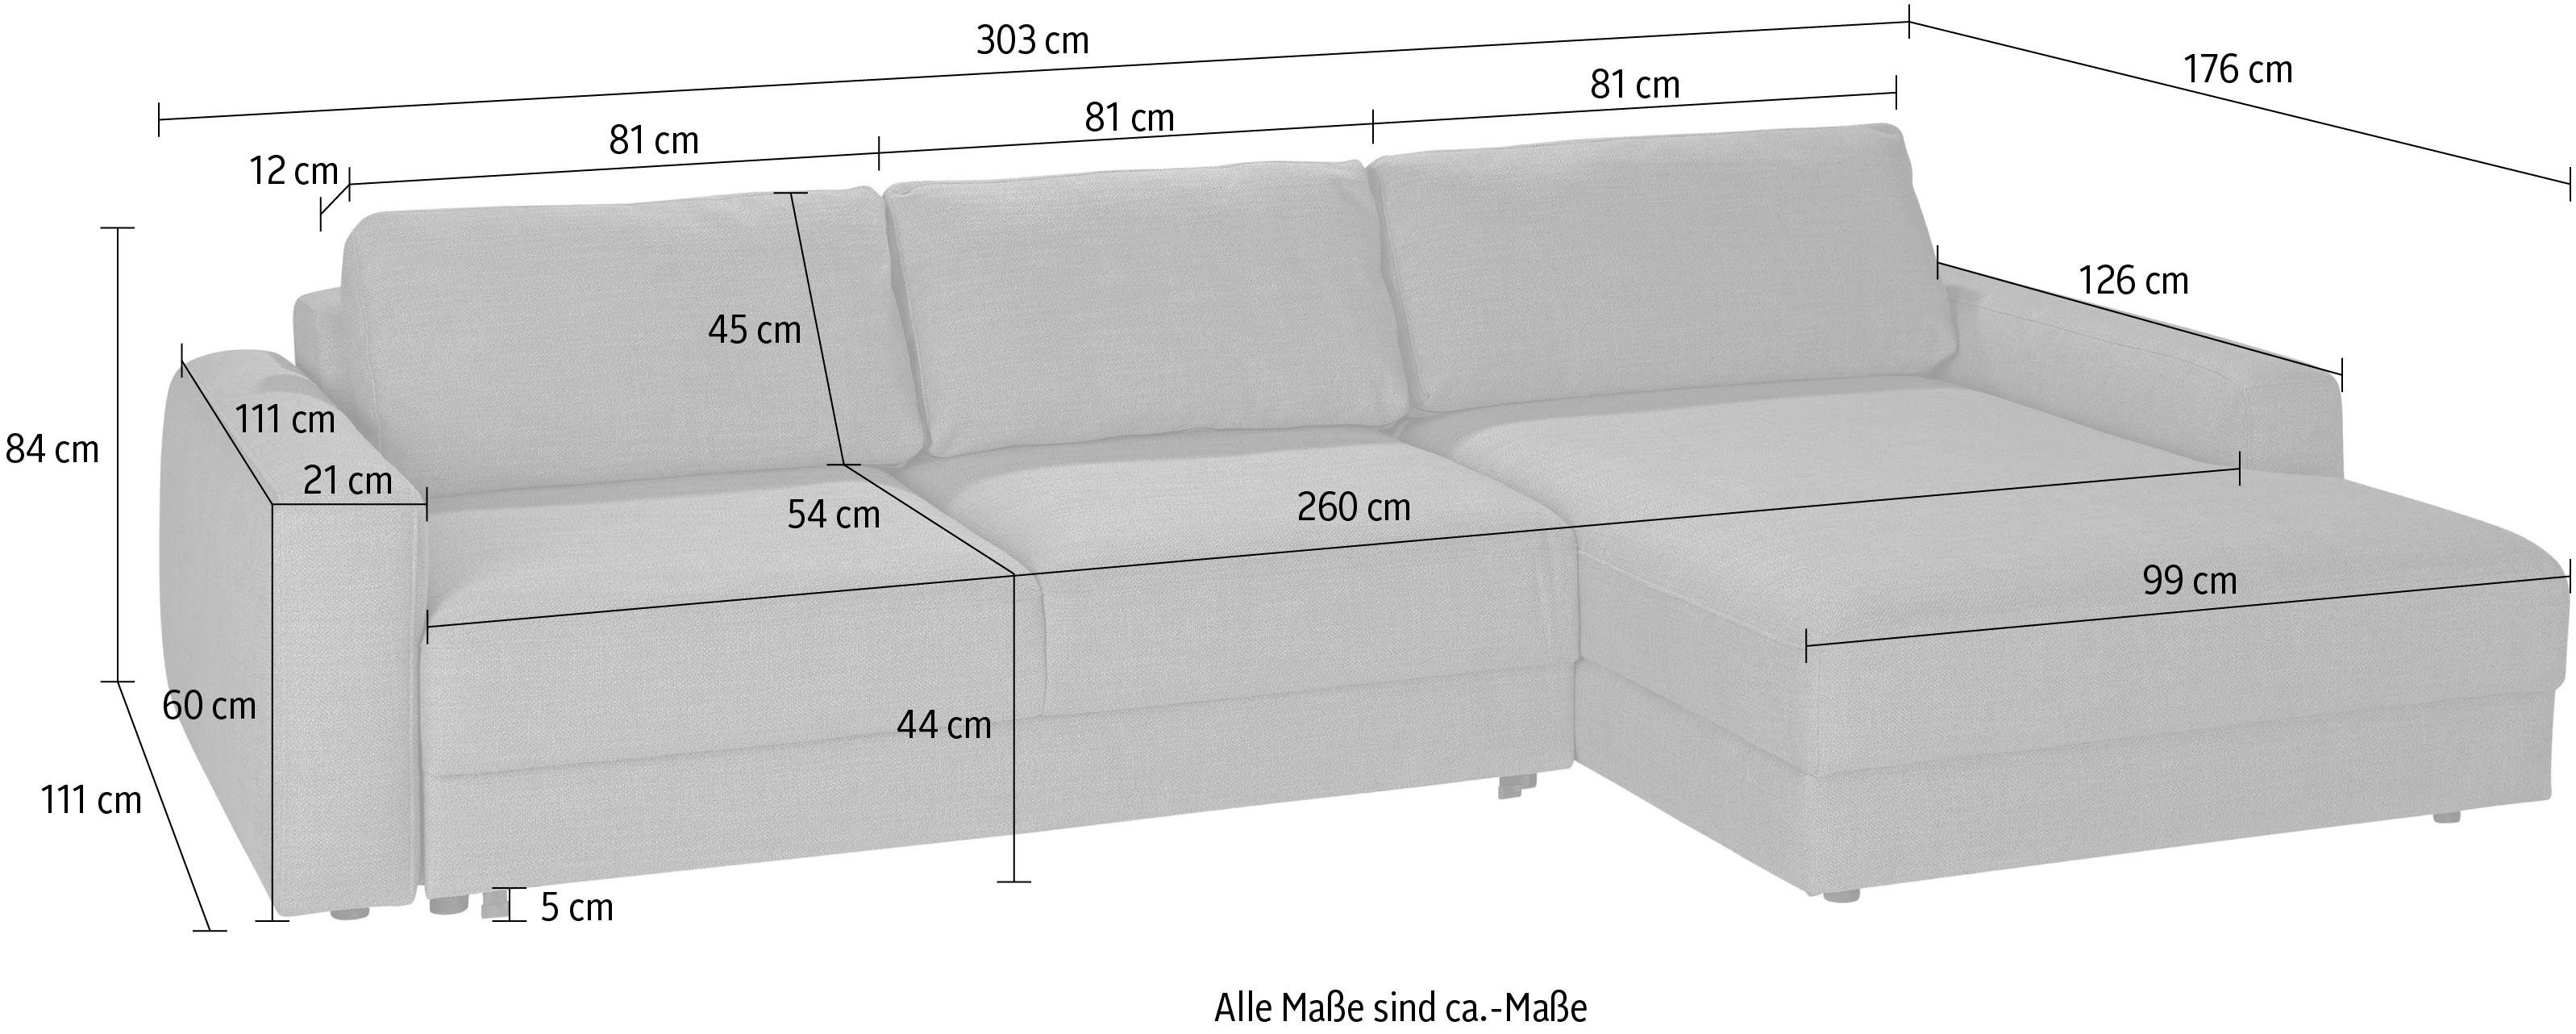 TRENDMANUFAKTUR Ecksofa Bourbon, wahlweise mit Bettfunktion und Bettkasten, Tiefe  Sitzfläche 54 cm